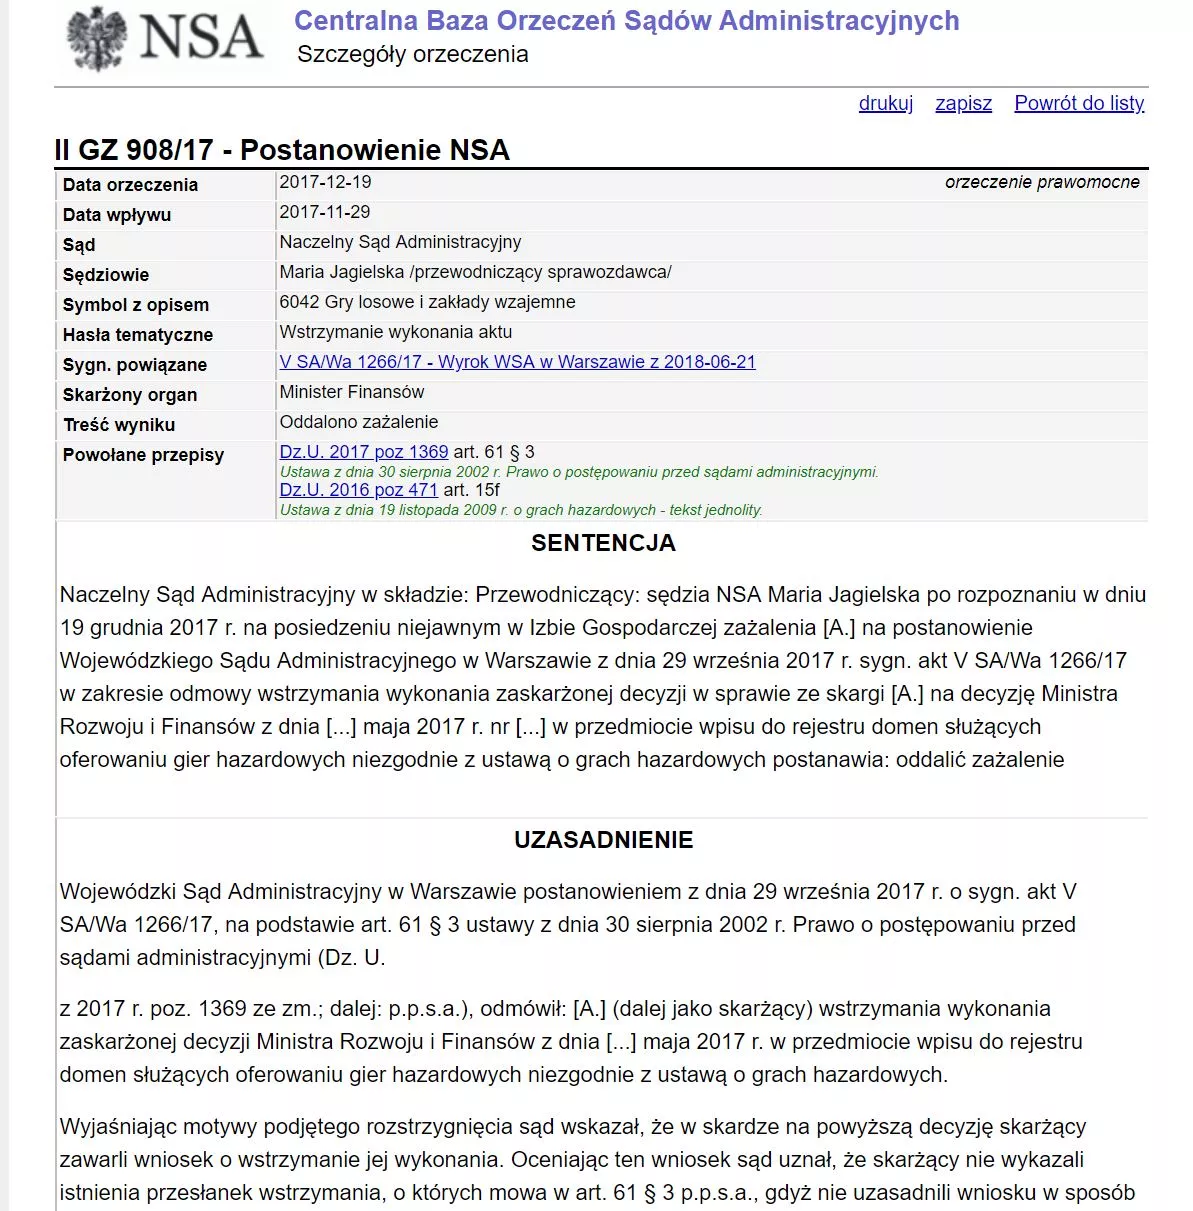 screen wyroku NSA - blokowanie nielegalnych bukmacherów